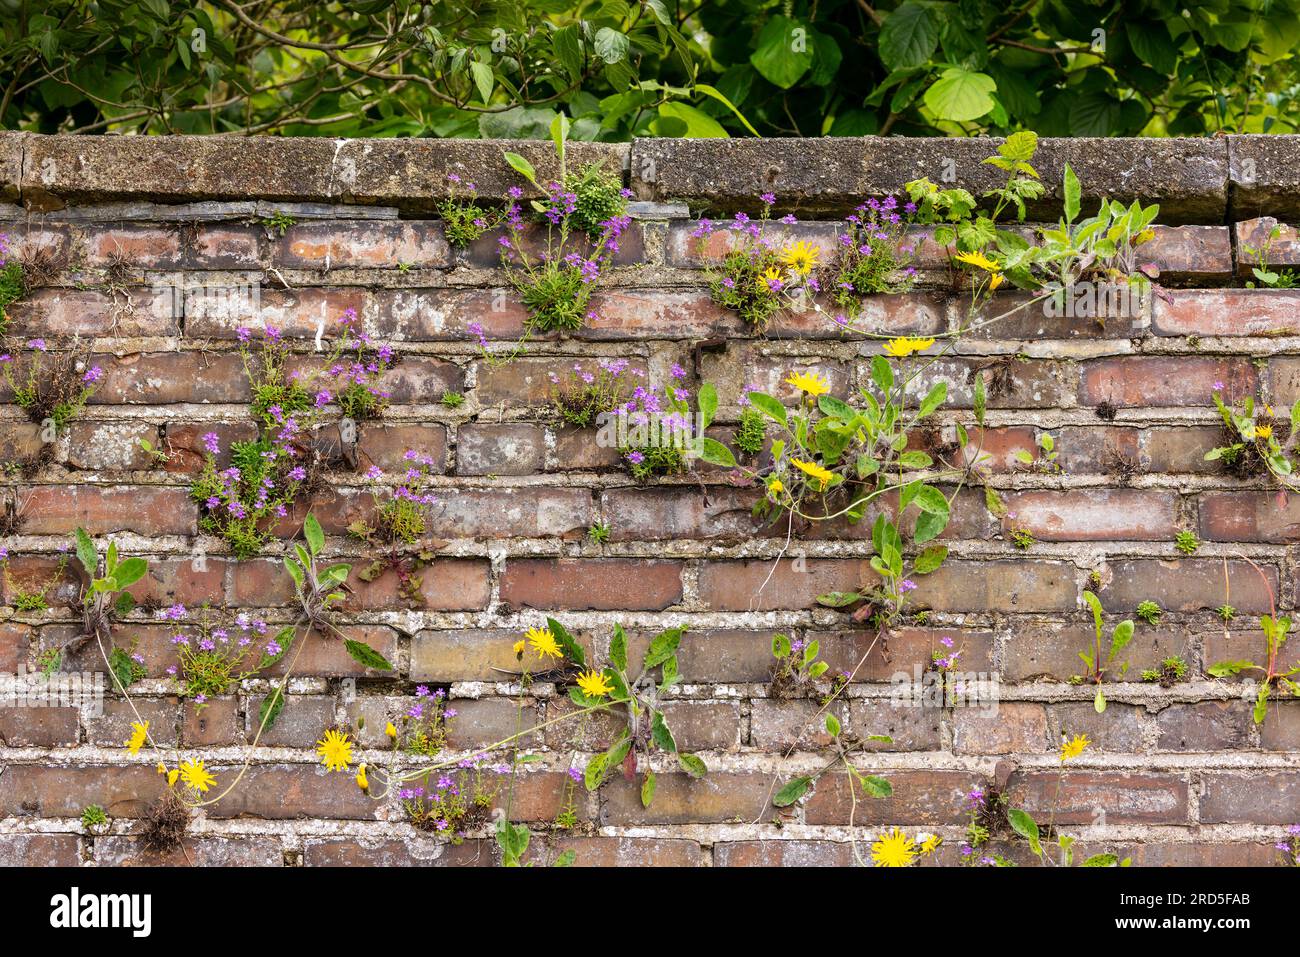 Vieux mur de pierre avec des fleurs sauvages et des mauvaises herbes poussant dans les fissures entre les briques texturées rugueuses. Concept jardin secret. Dublin, Irlande Banque D'Images